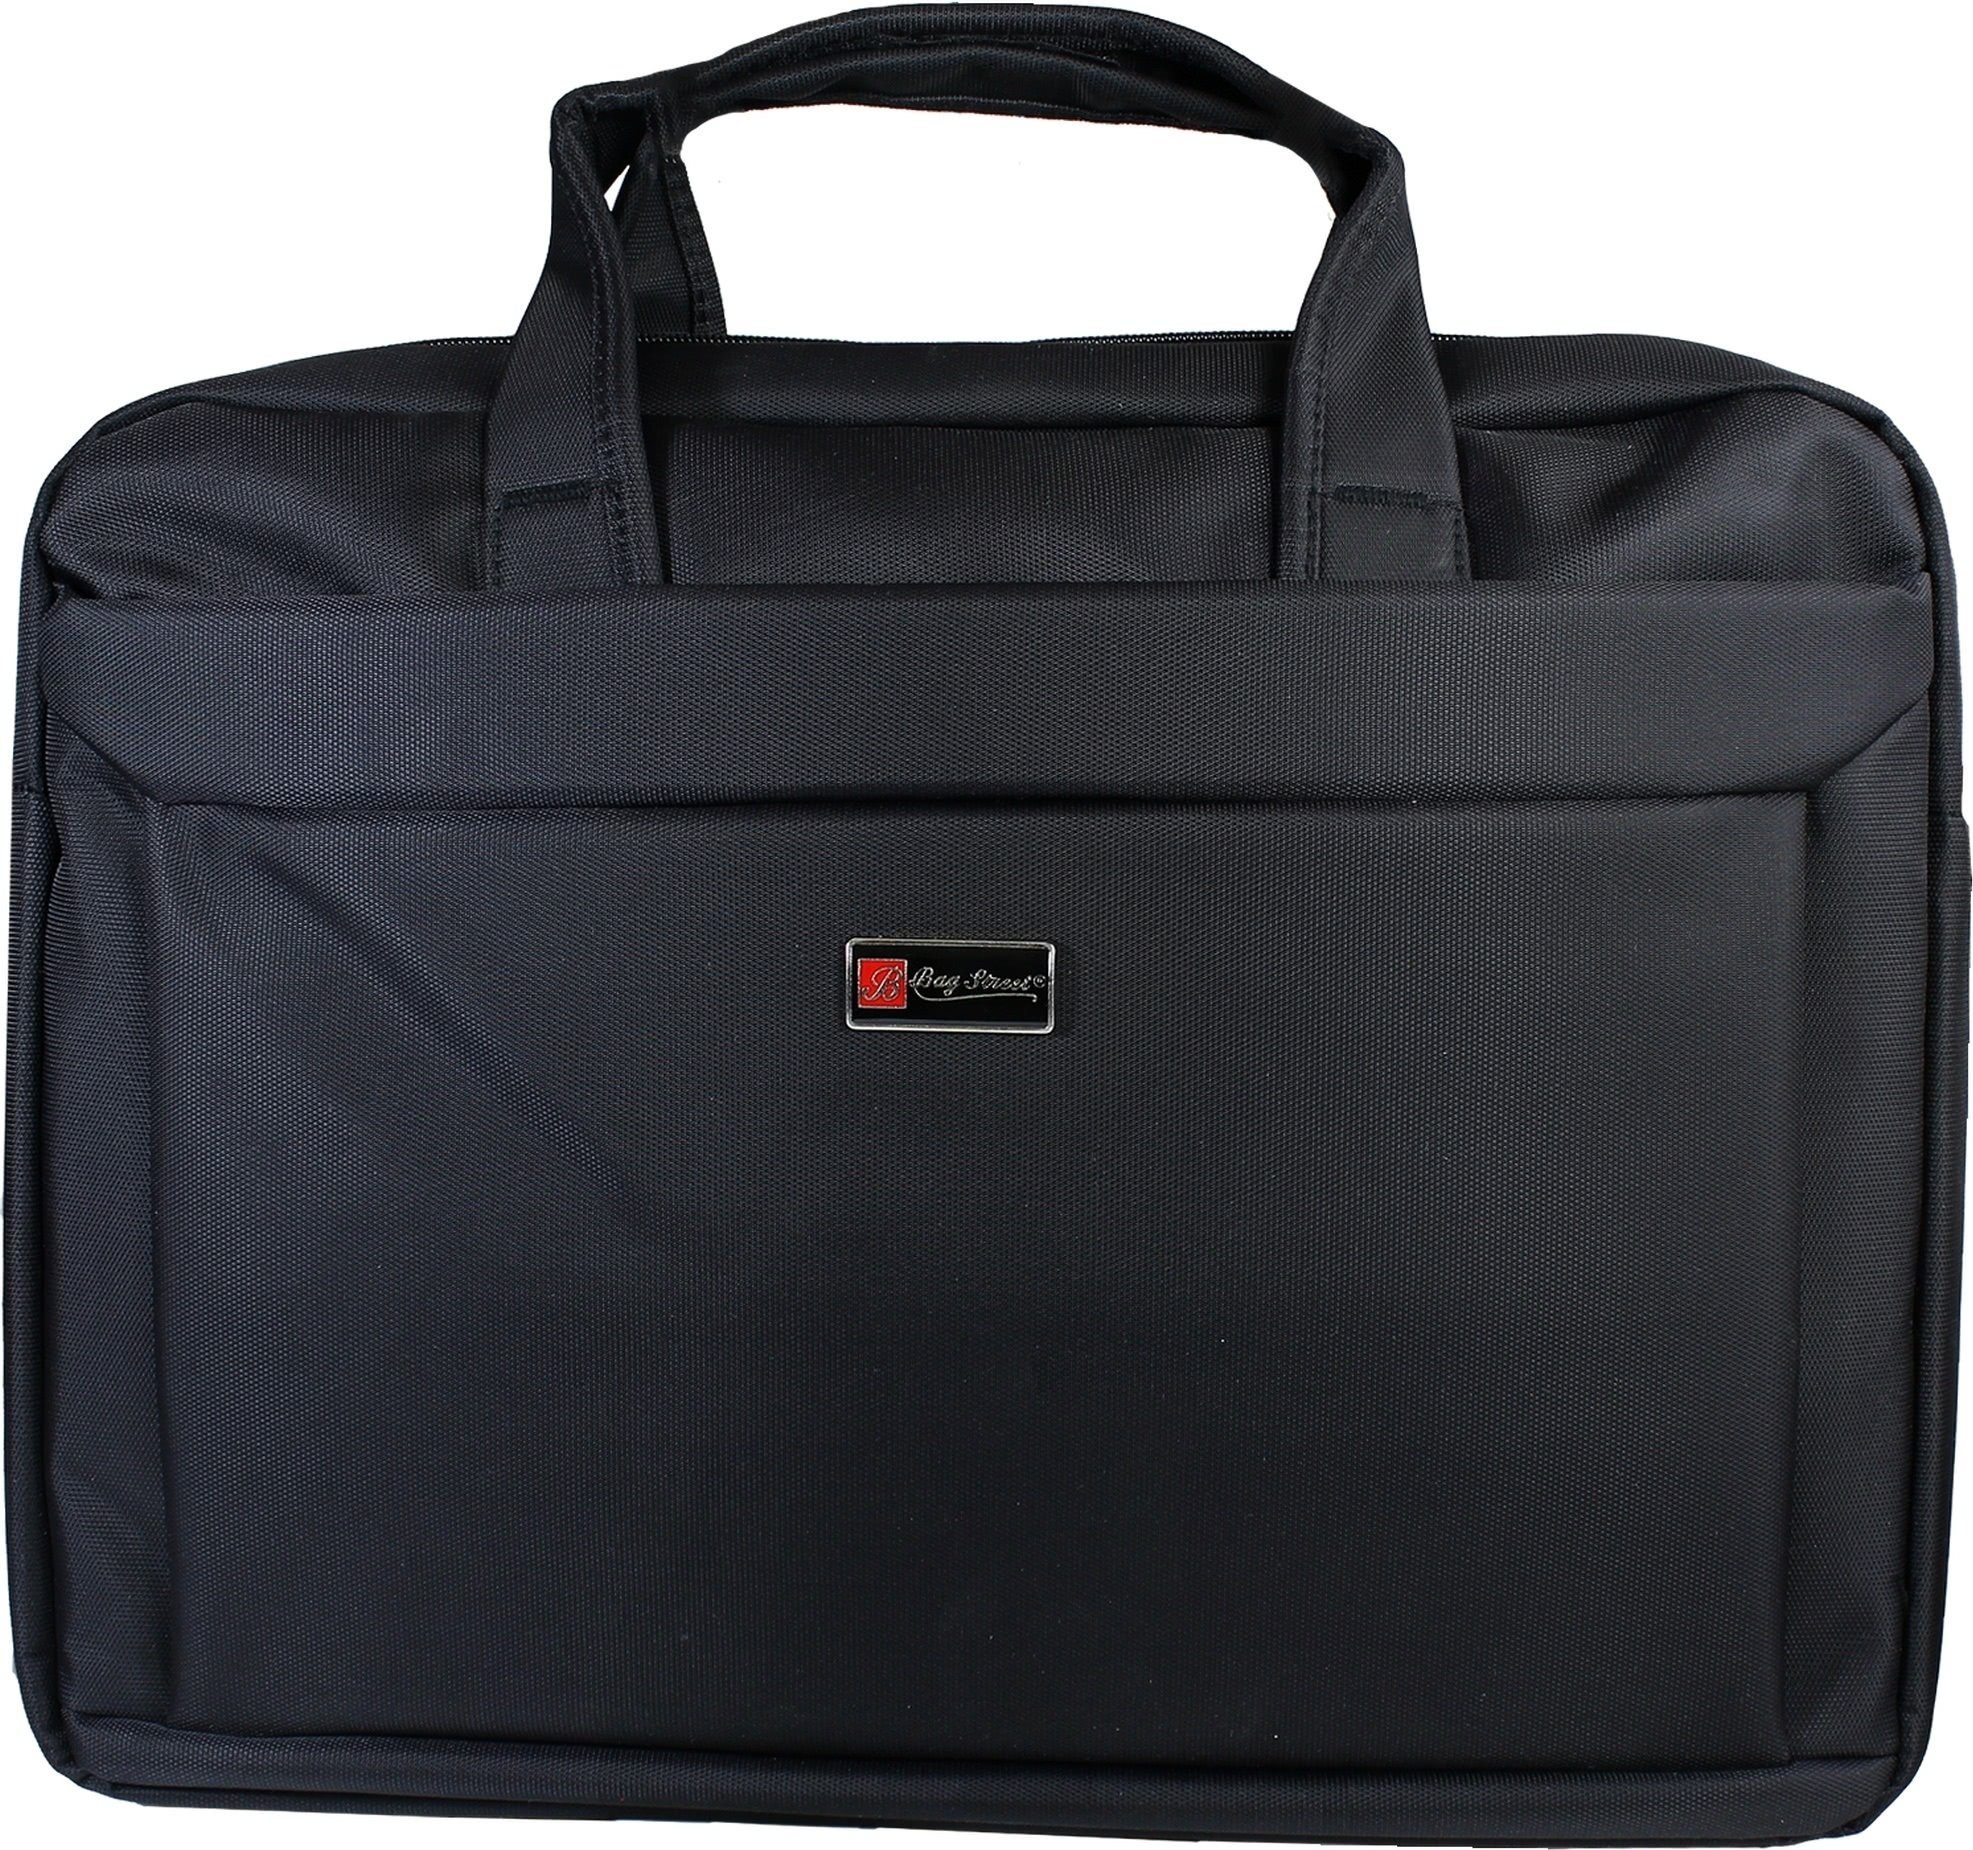 BAG STREET Laptoptasche Bag Street Business Notebooktasche, Herren, Damen  Tasche in schwarz, ca. 38cm Breite